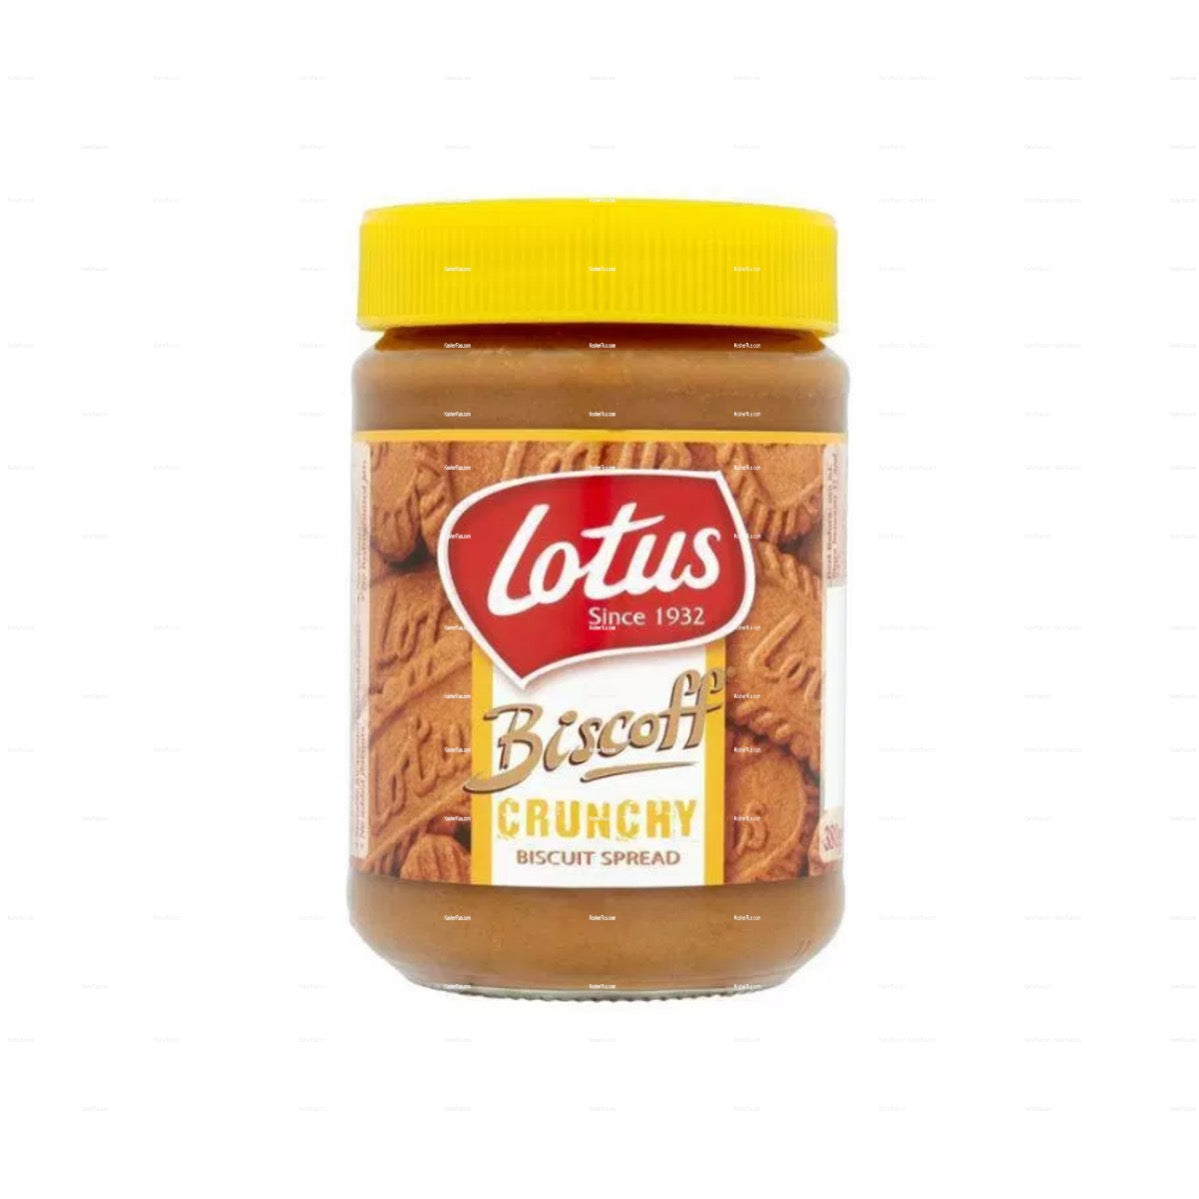 Lotus Biscoff Crunchy Spread 14oz